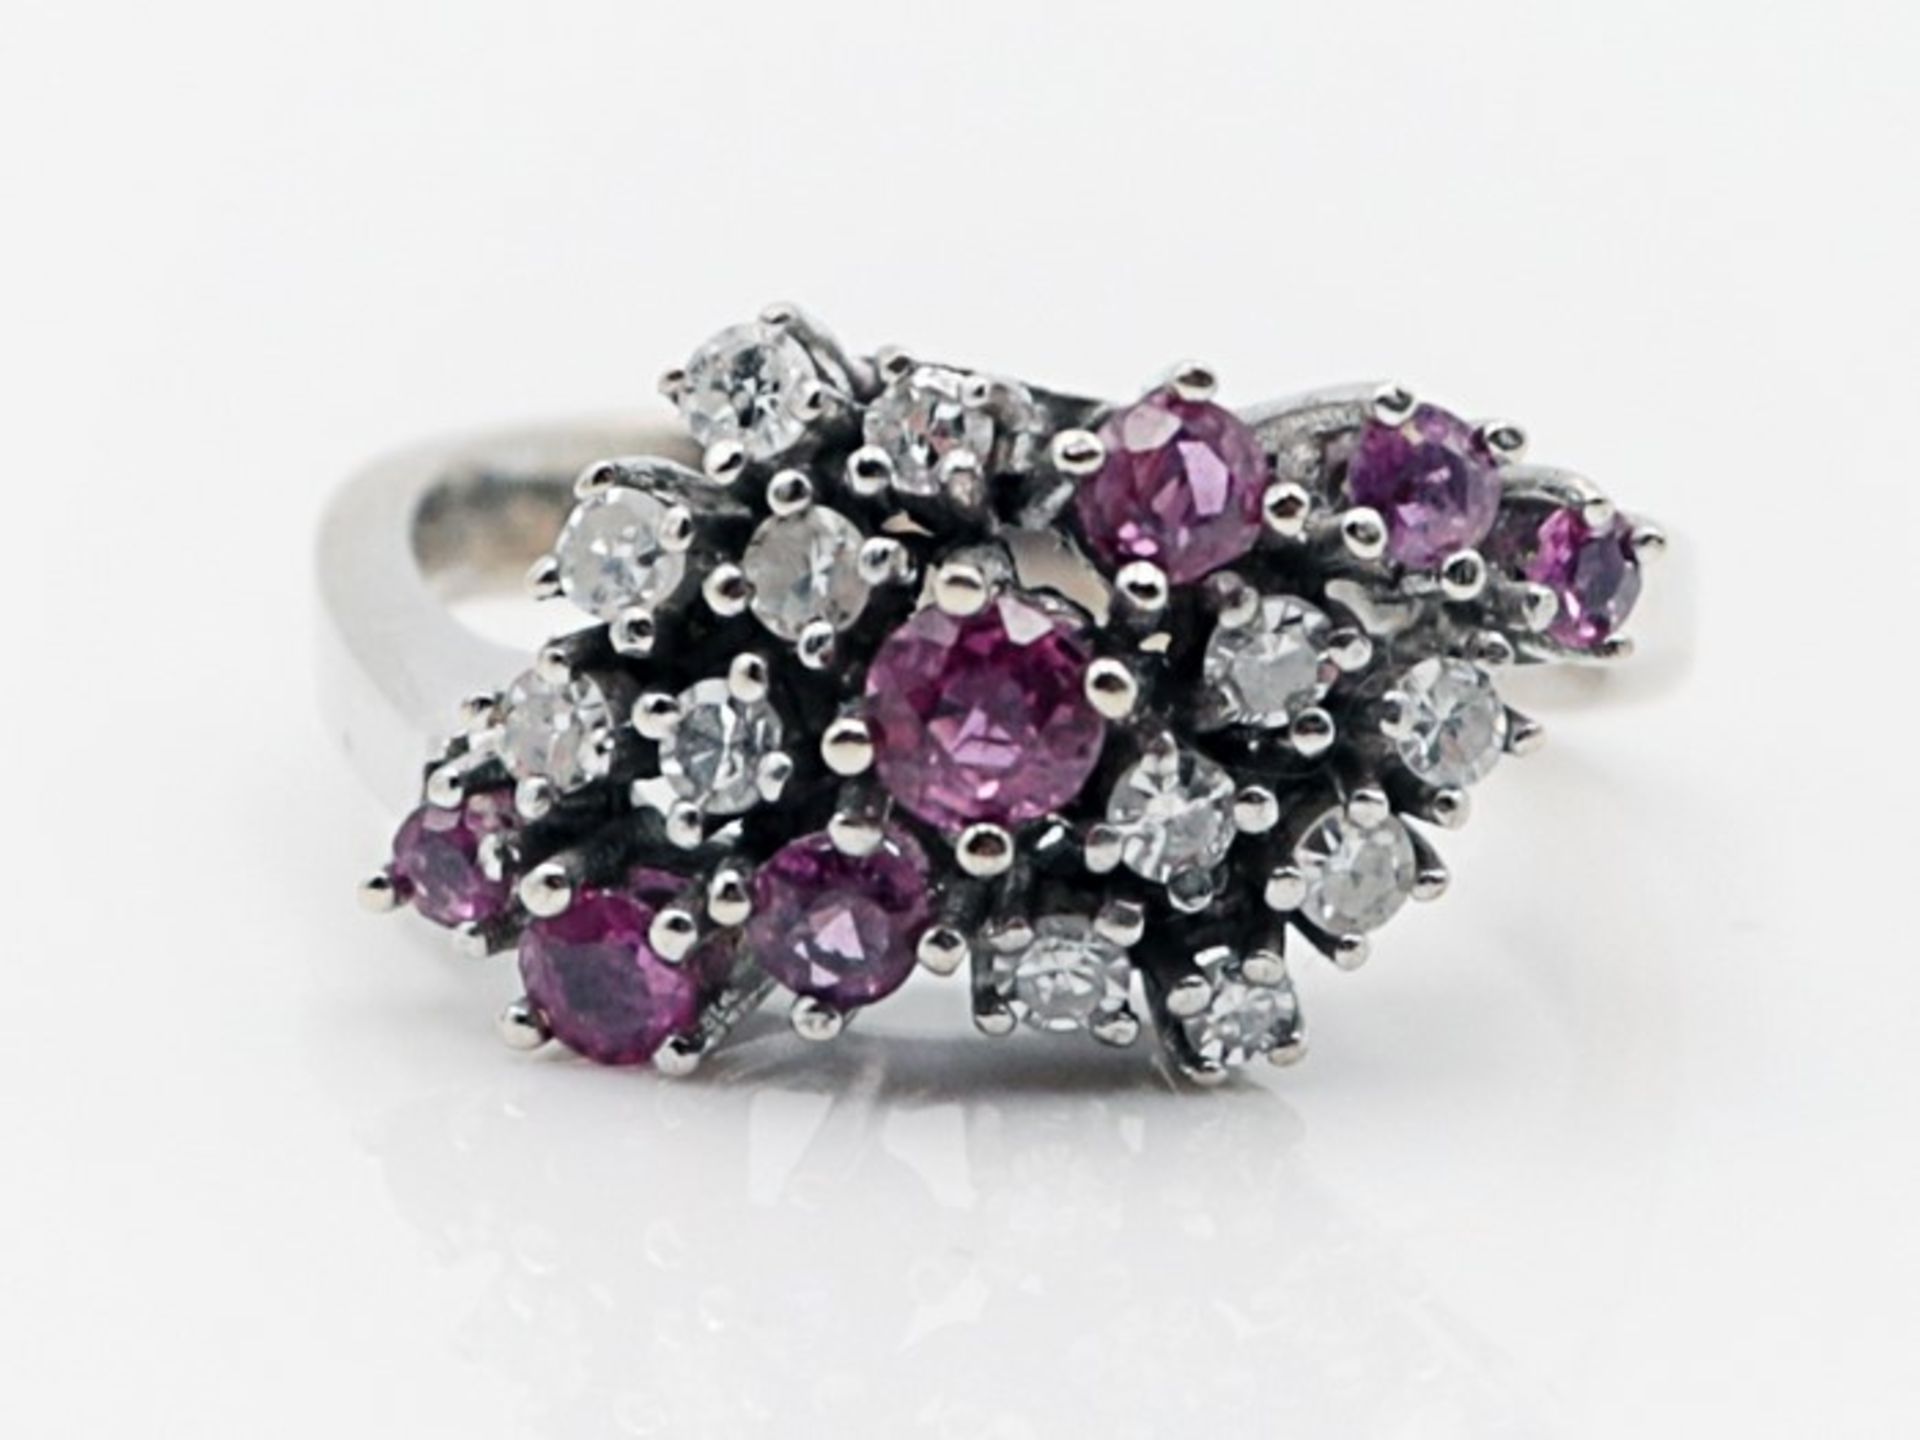 Diamant/Rubin - DamenringWG 585, wellenförmiger Ringkopf besetzt mit Diamanten, zus.ca.0,36ct, sowie